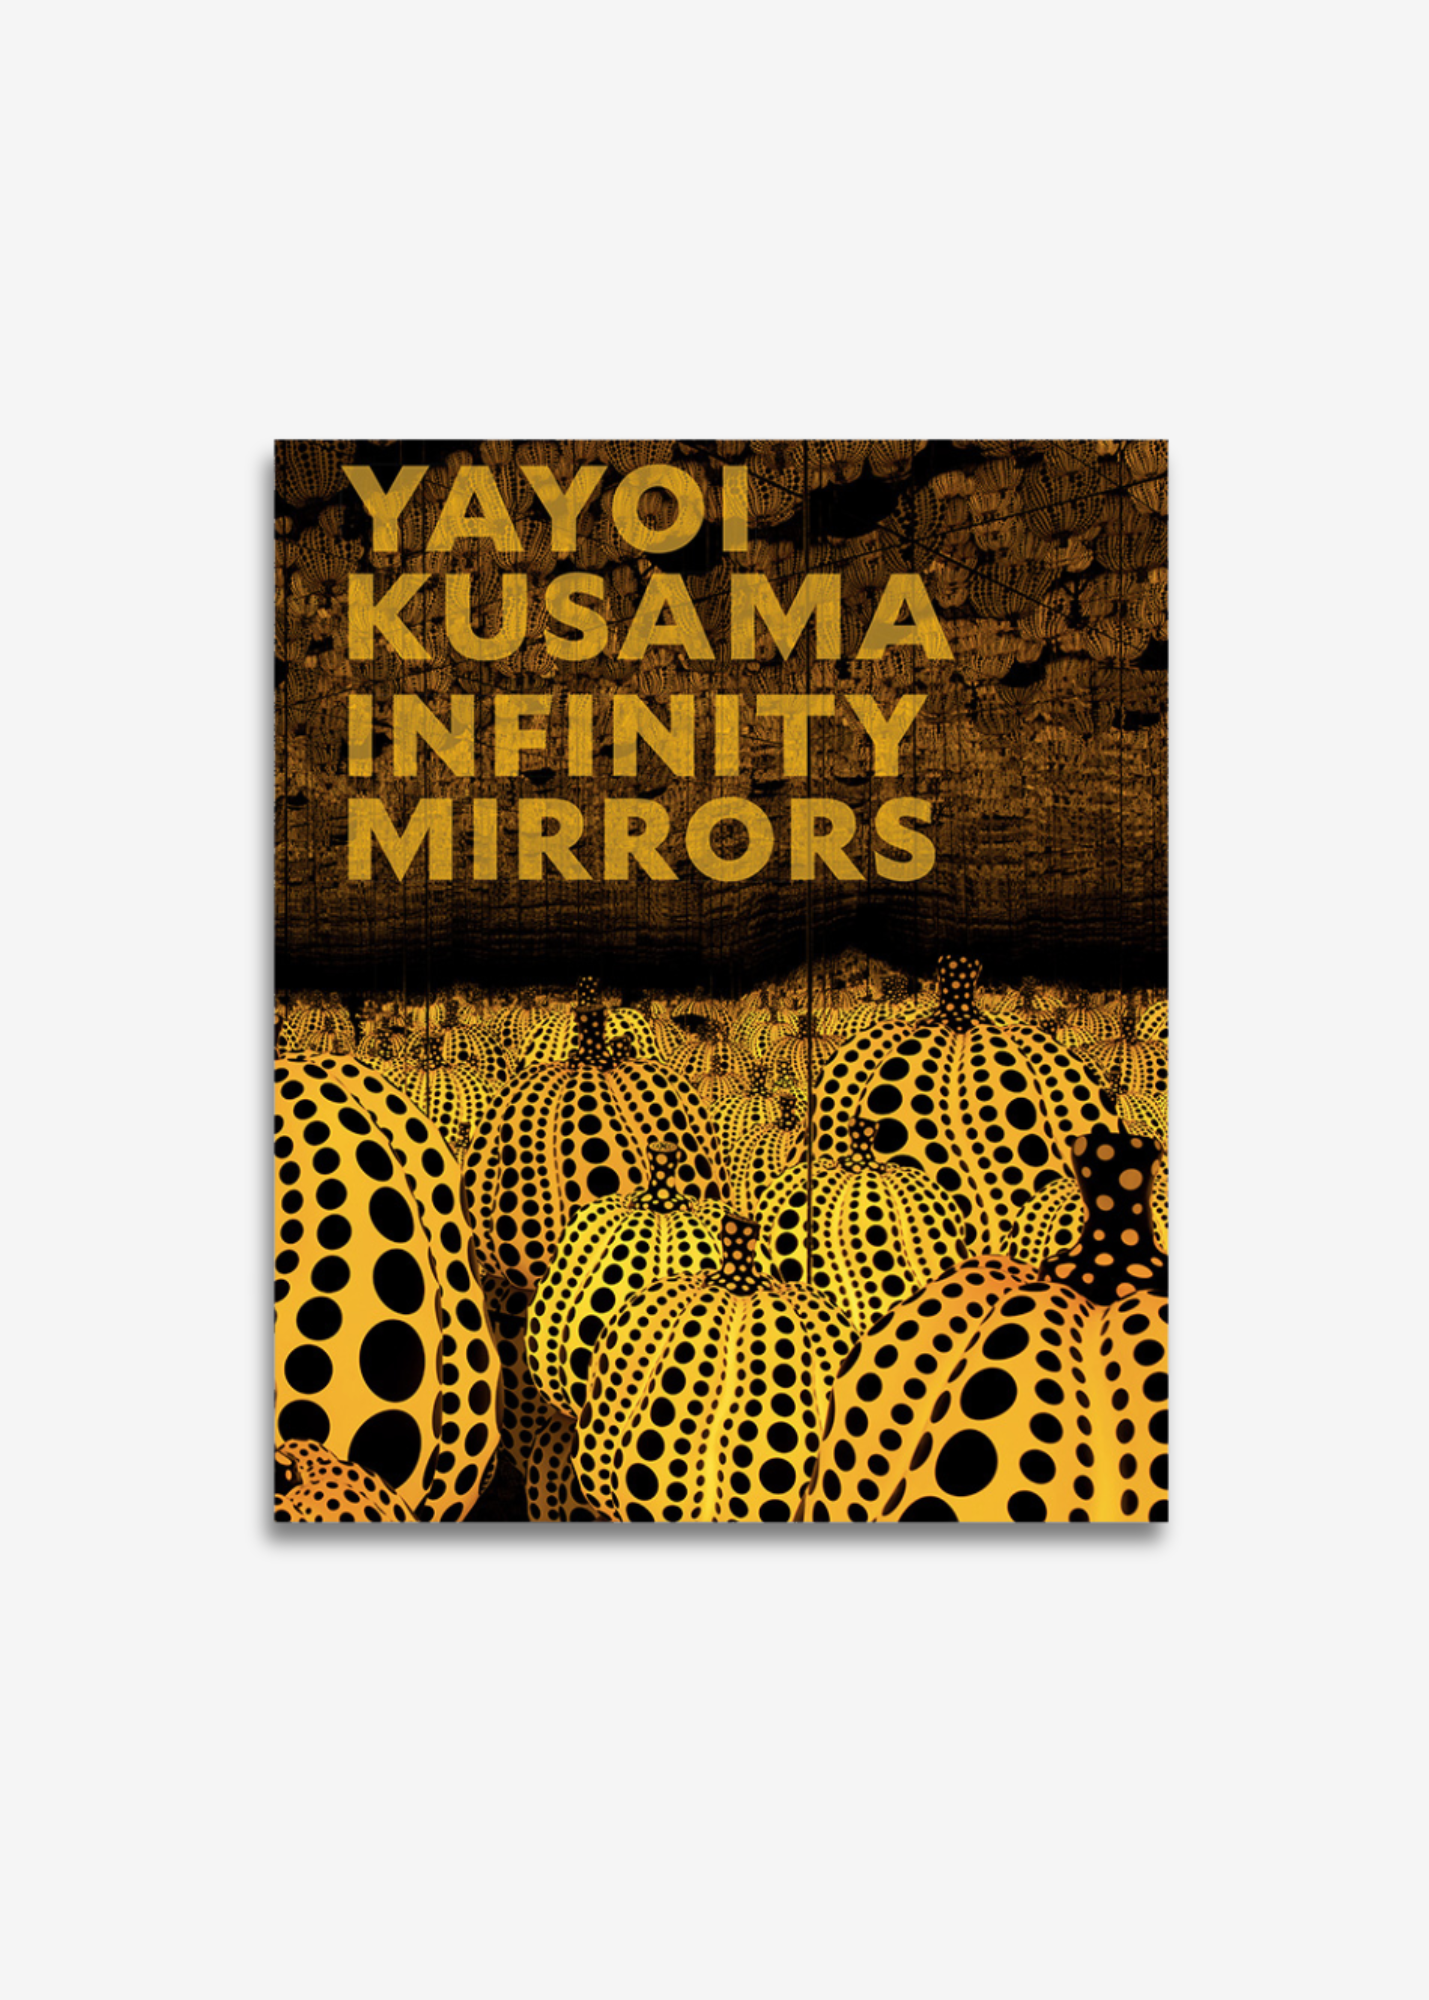 YAYOI KUSAMA: INFINITY MIRRORS